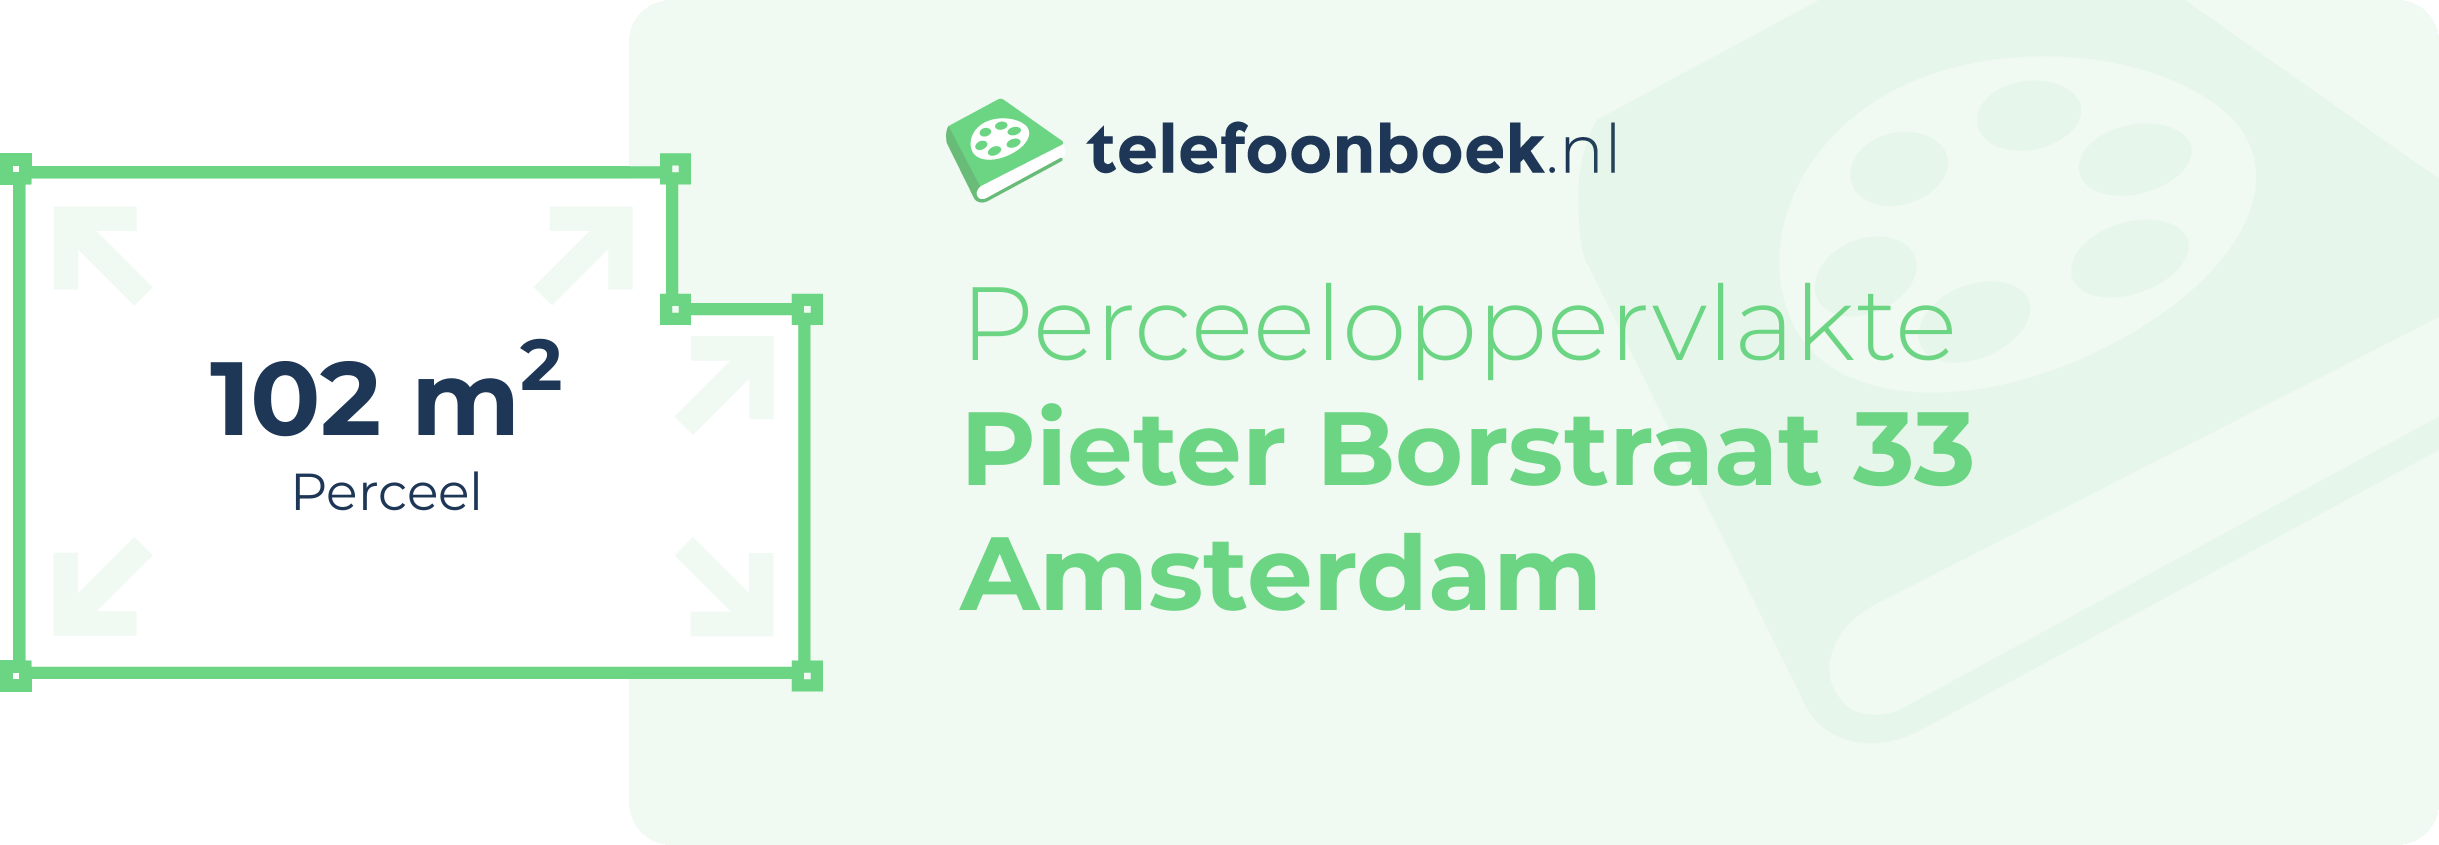 Perceeloppervlakte Pieter Borstraat 33 Amsterdam